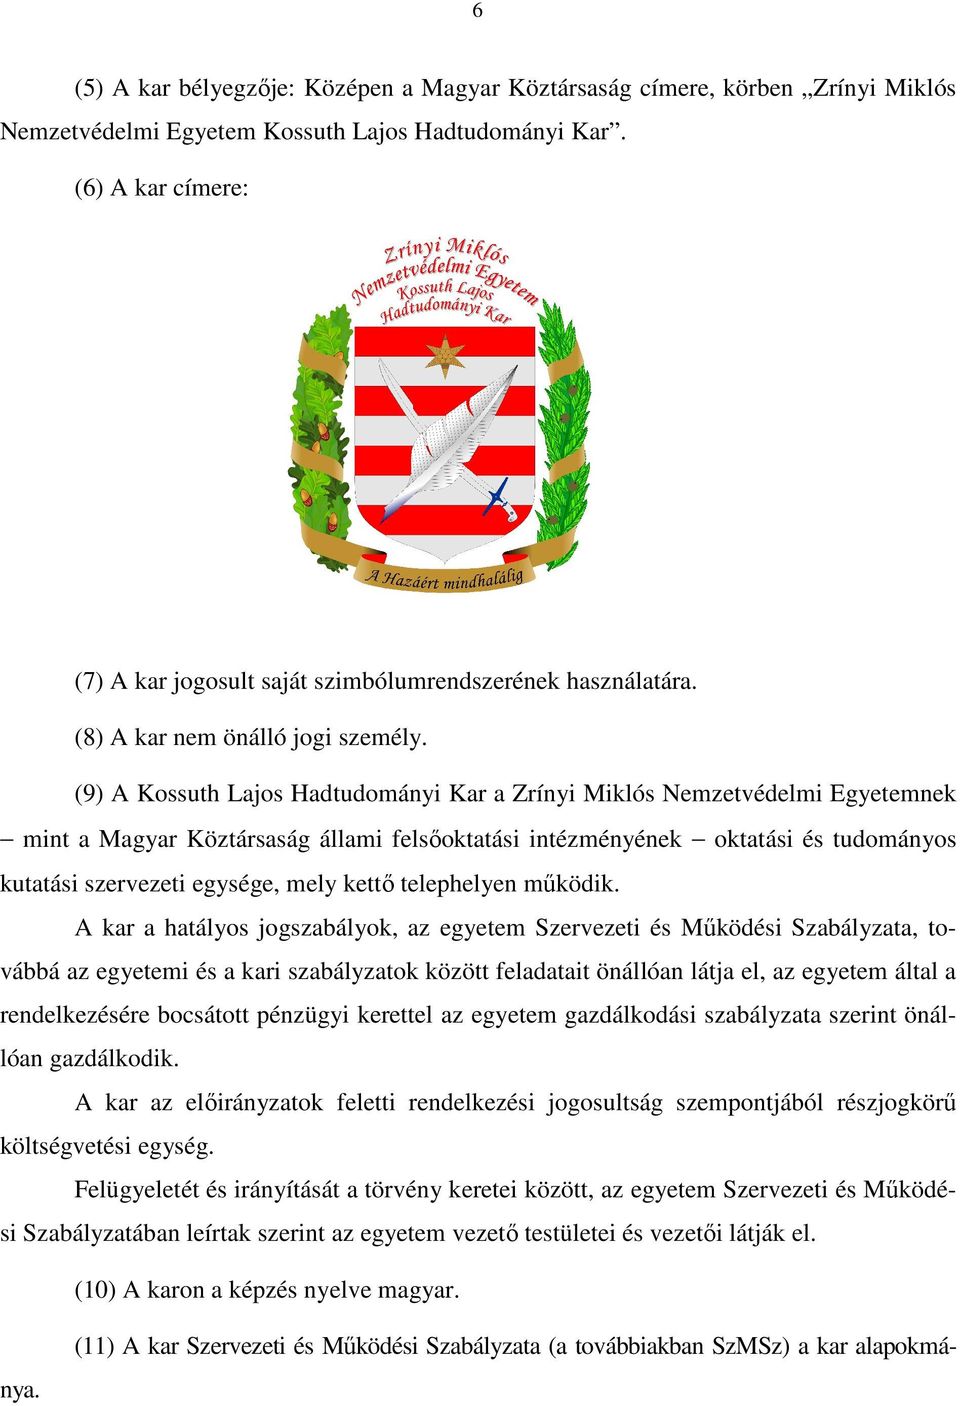 (9) A Kossuth Lajos Hadtudományi Kar a Zrínyi Miklós Nemzetvédelmi Egyetemnek mint a Magyar Köztársaság állami felsőoktatási intézményének oktatási és tudományos kutatási szervezeti egysége, mely